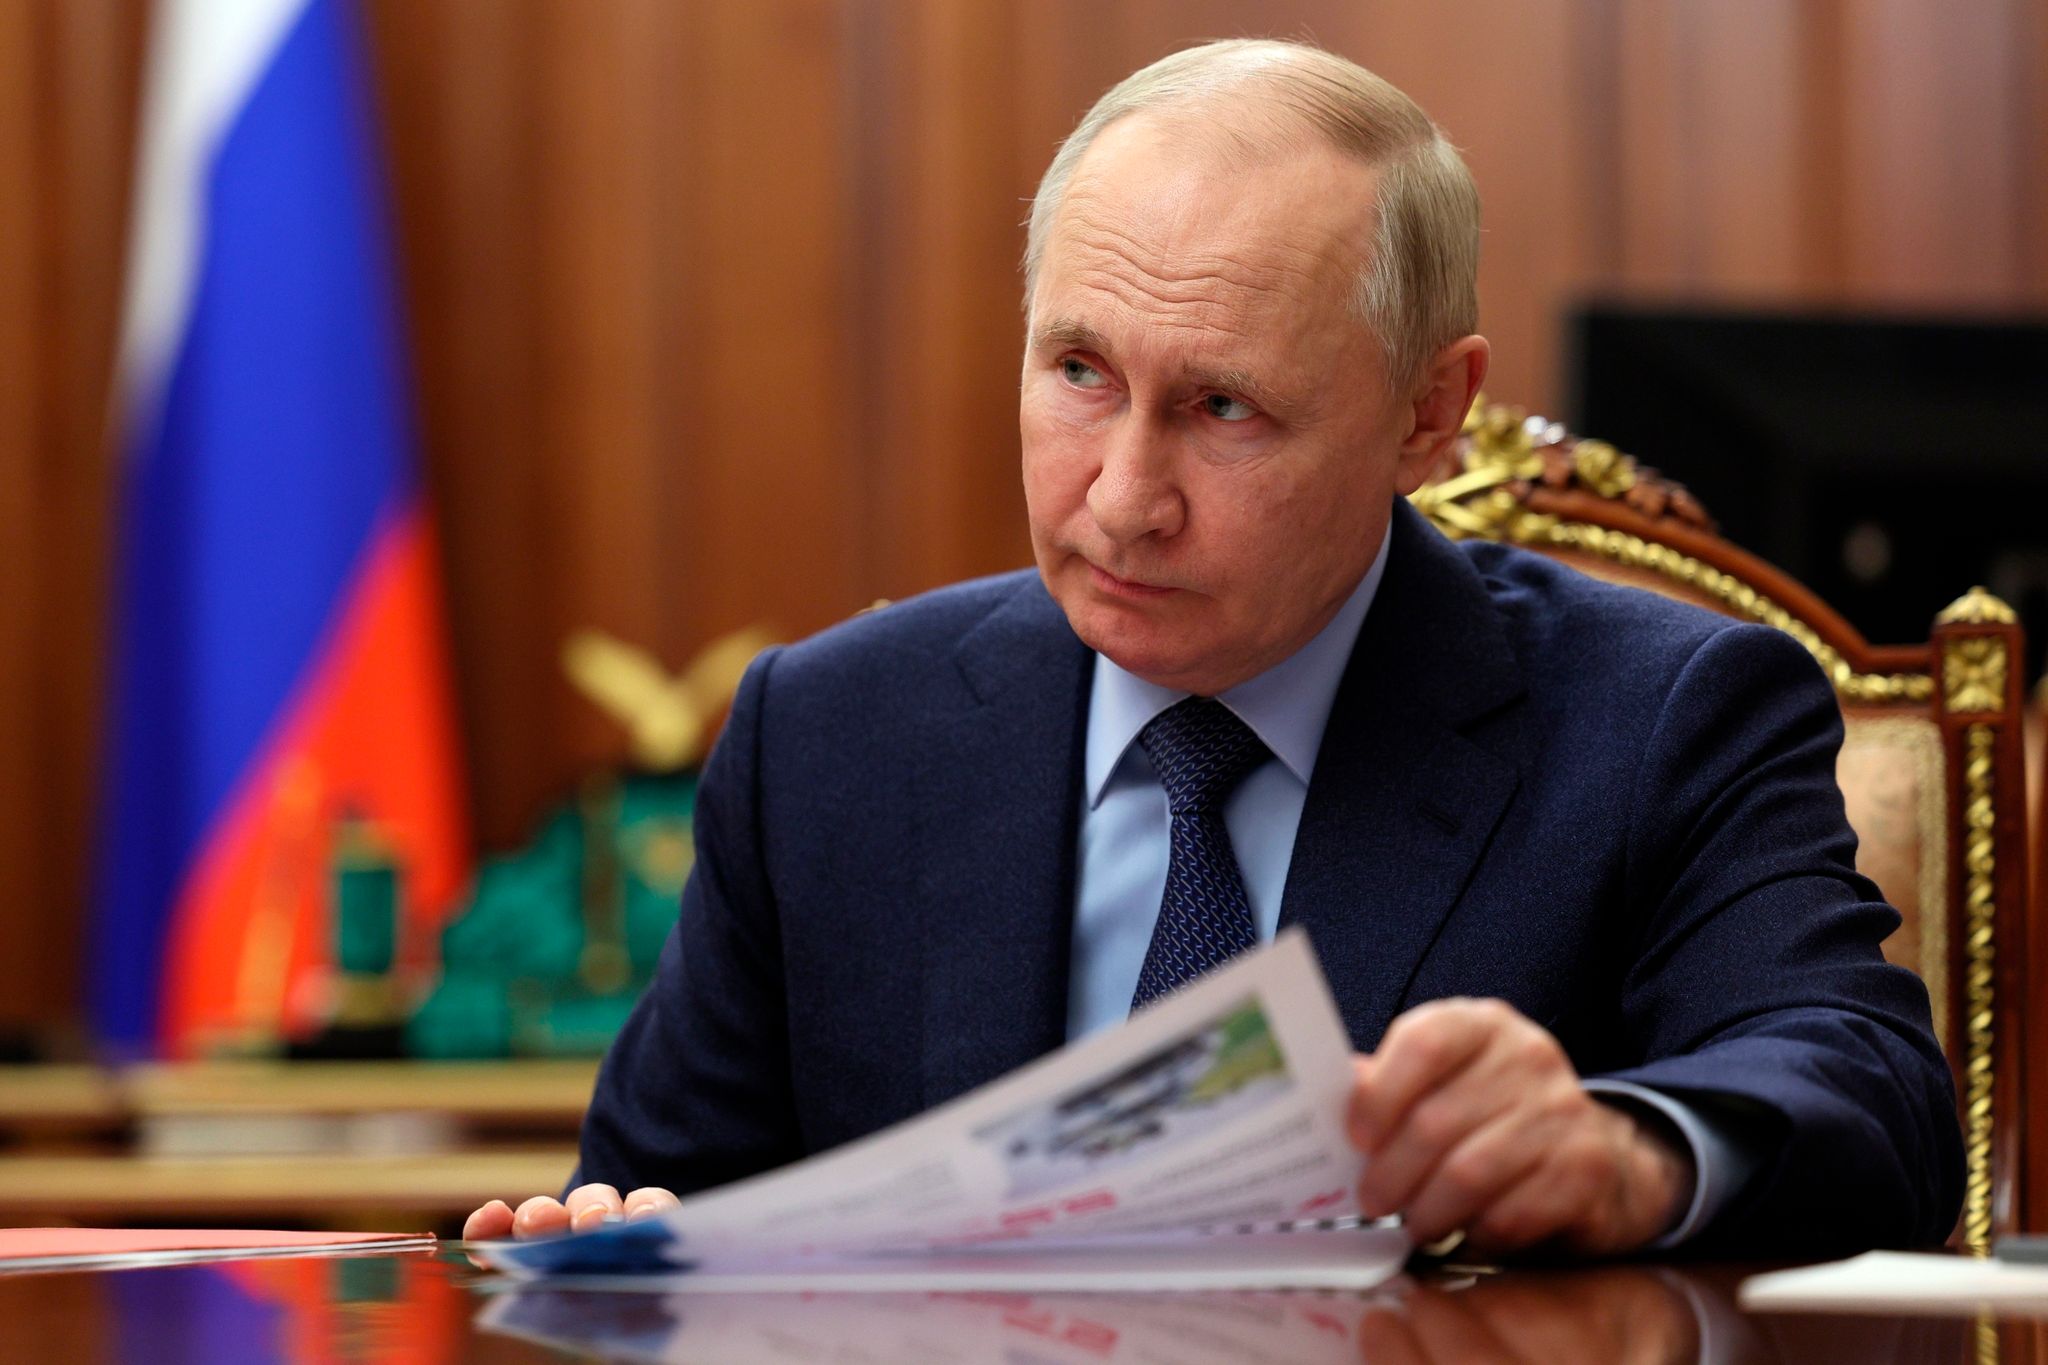 Wahlen und neue Weltordnung – Putin will Macht zementieren